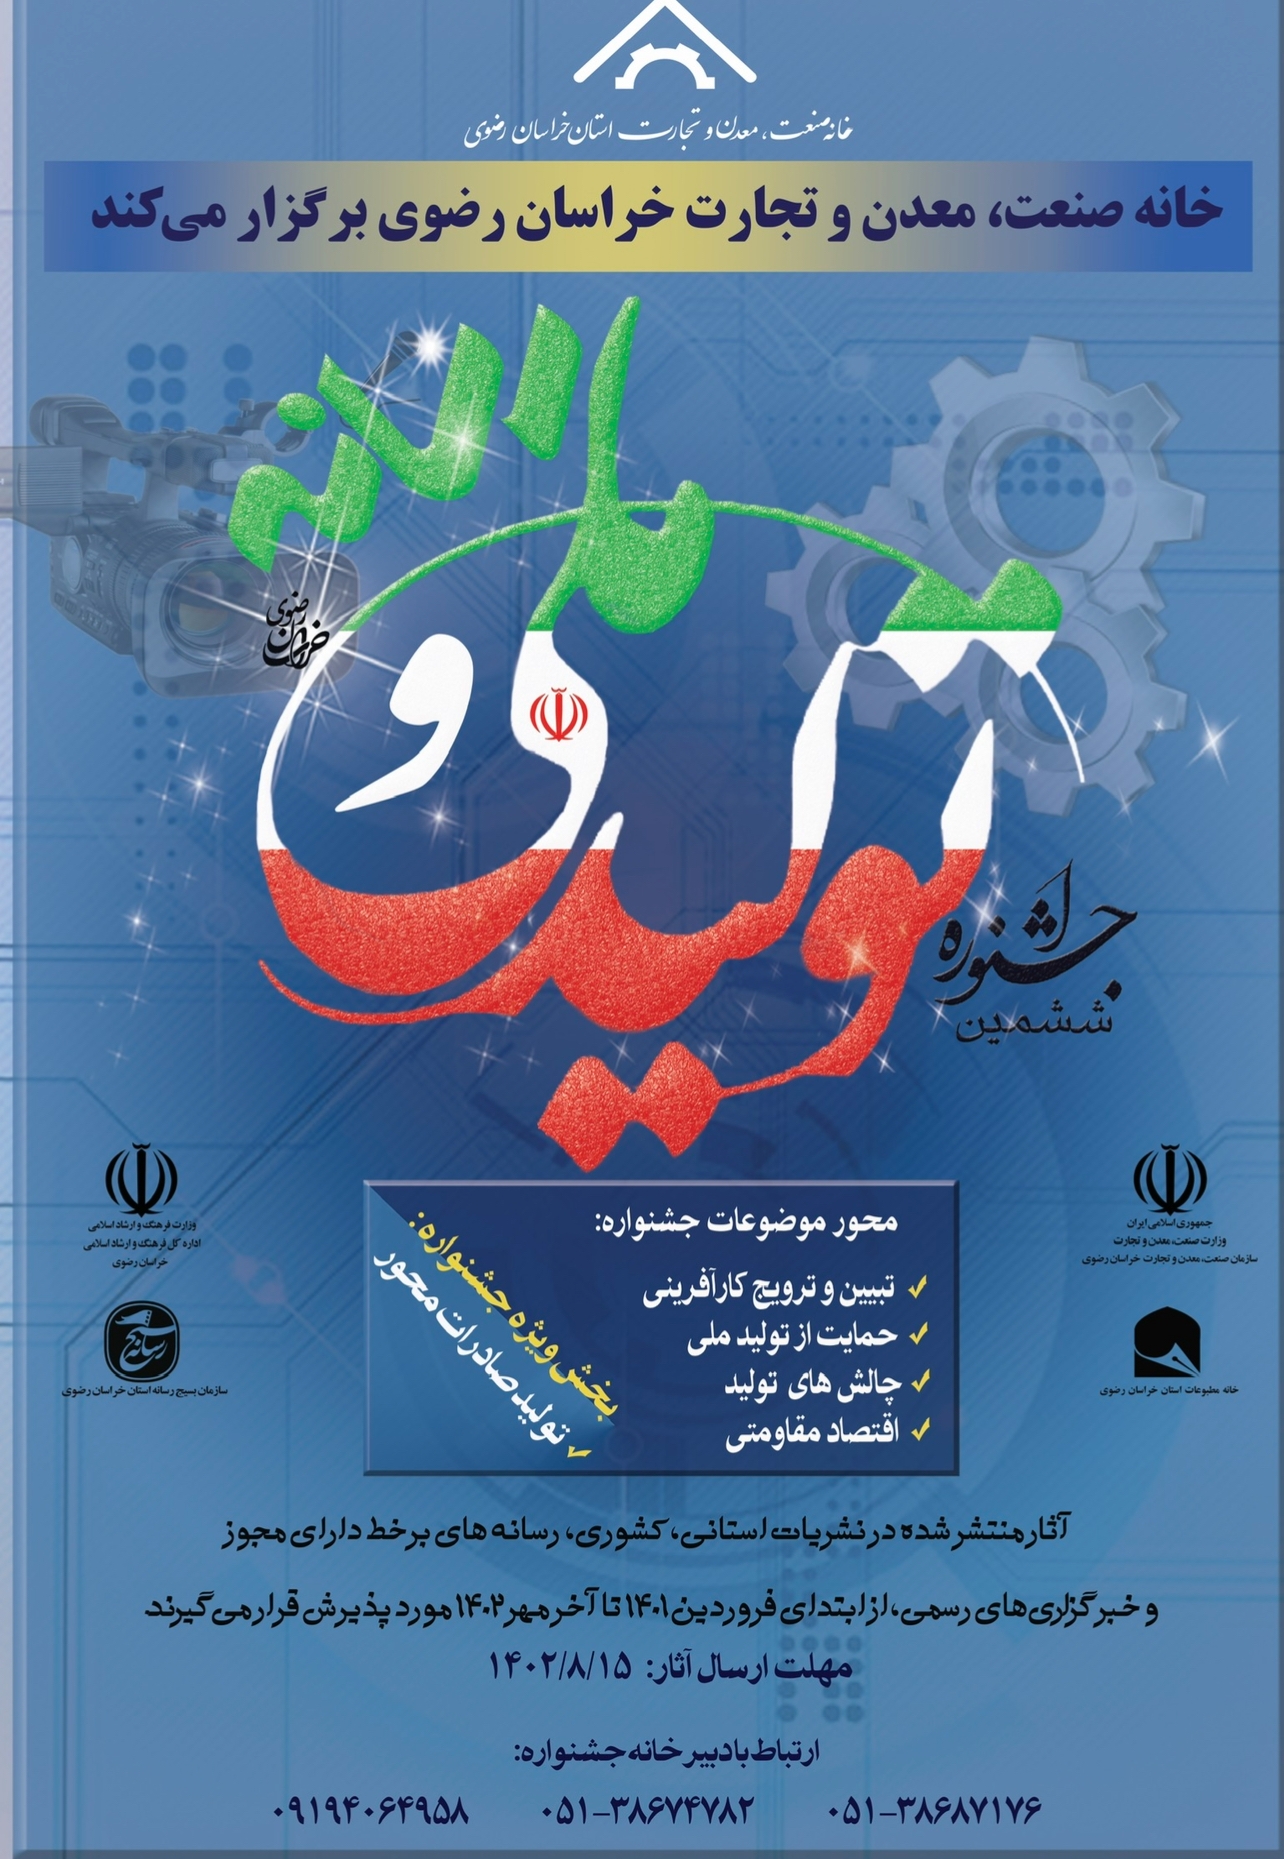 رونمایی از پوستر ششمین جشنواره تولید ملی و رسانه خراسان رضوی + نحوه ثبت نام